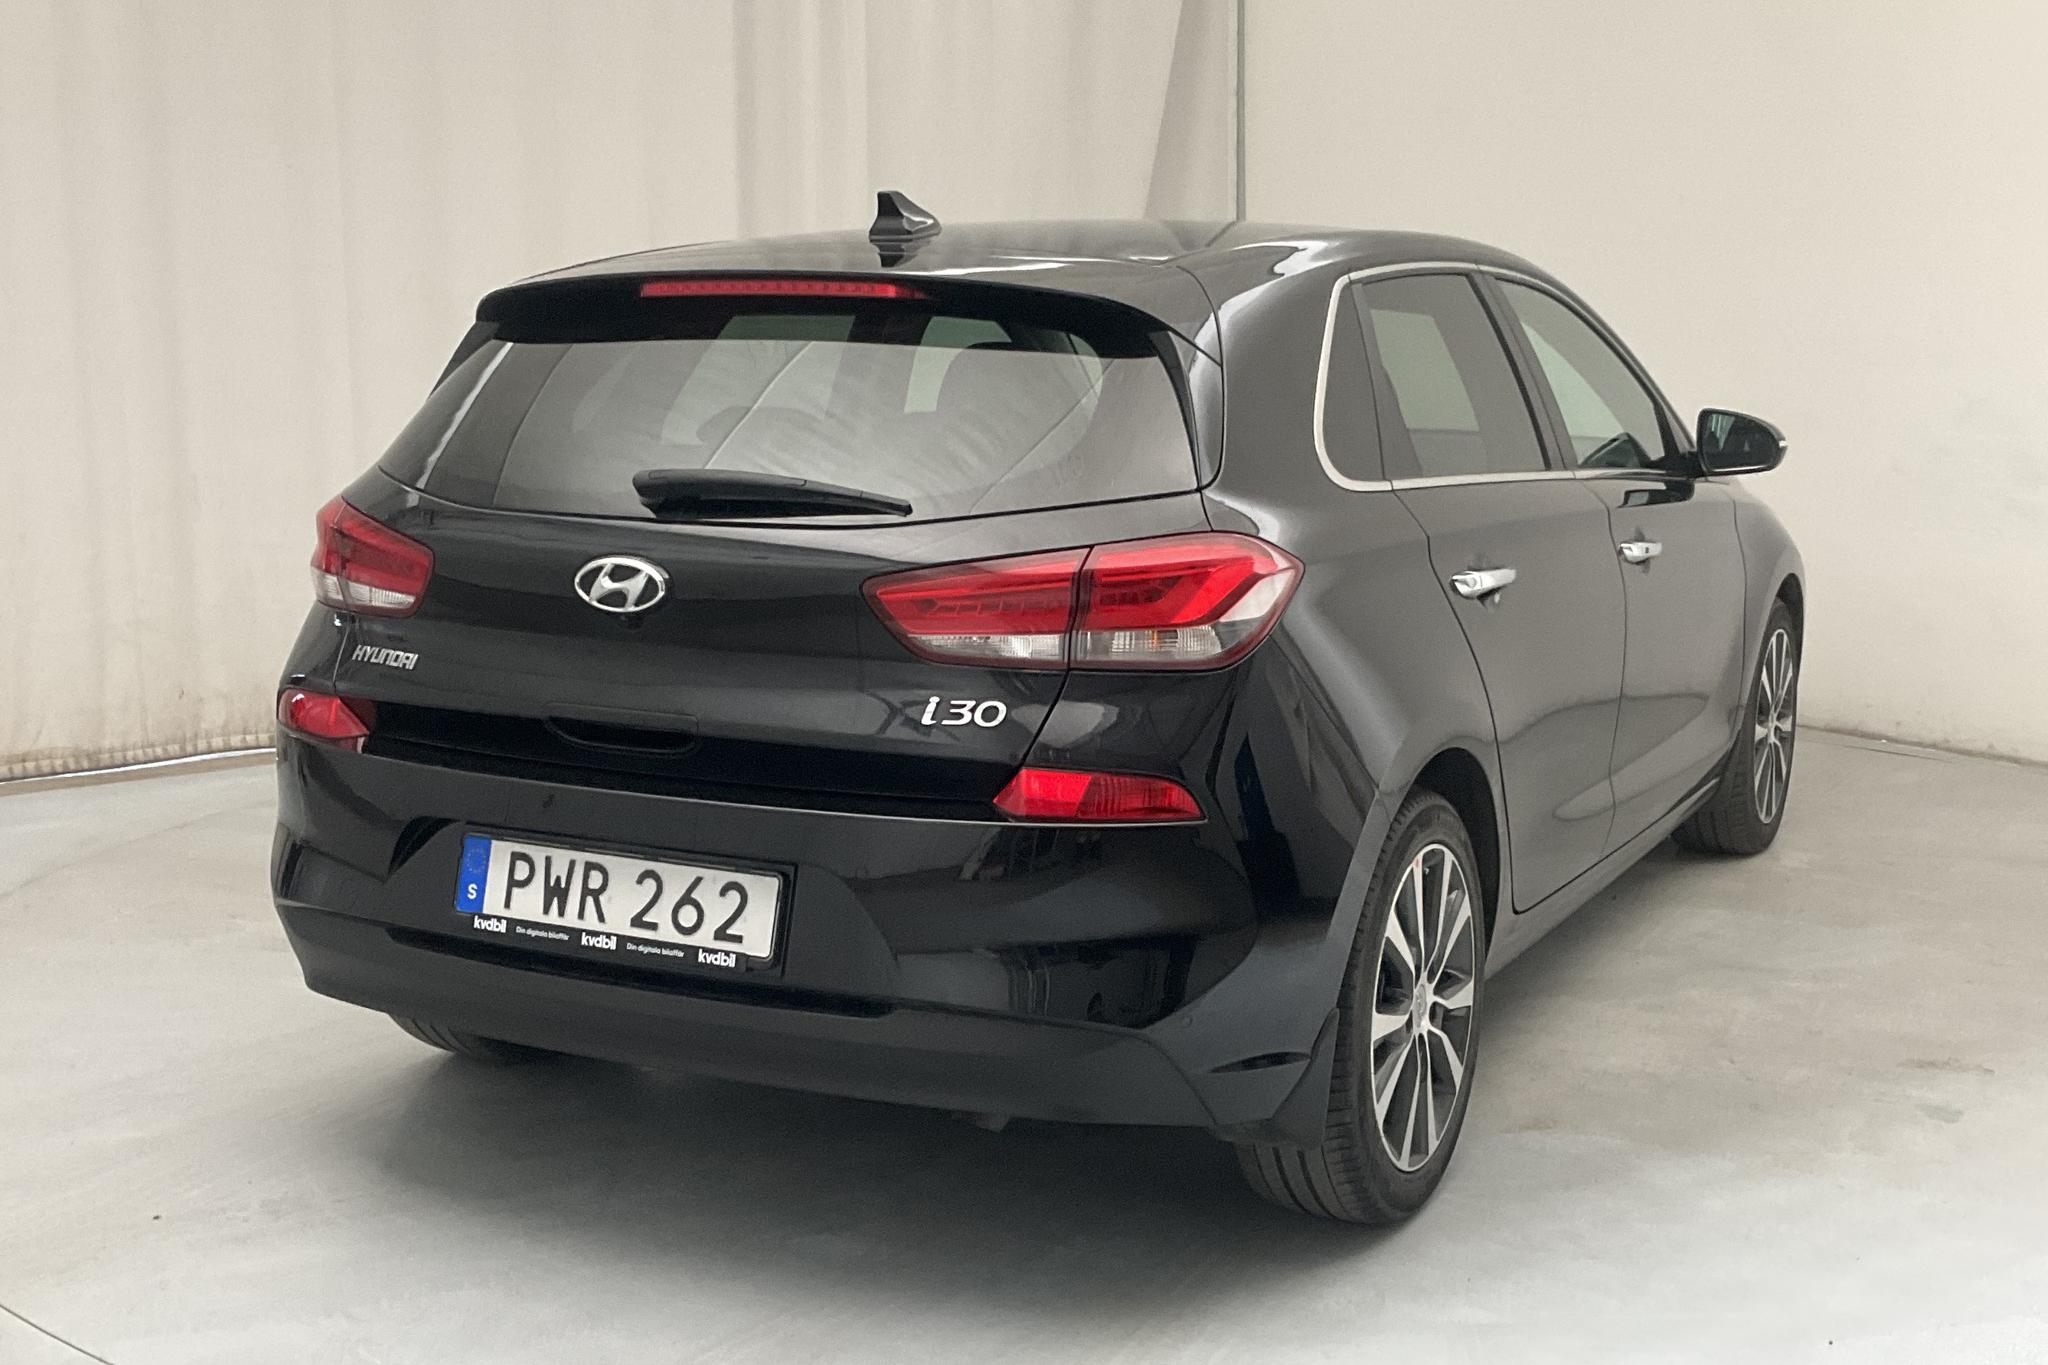 Hyundai i30 1.4 T-GDi 5dr (140hk) - 9 882 mil - Manuell - svart - 2018